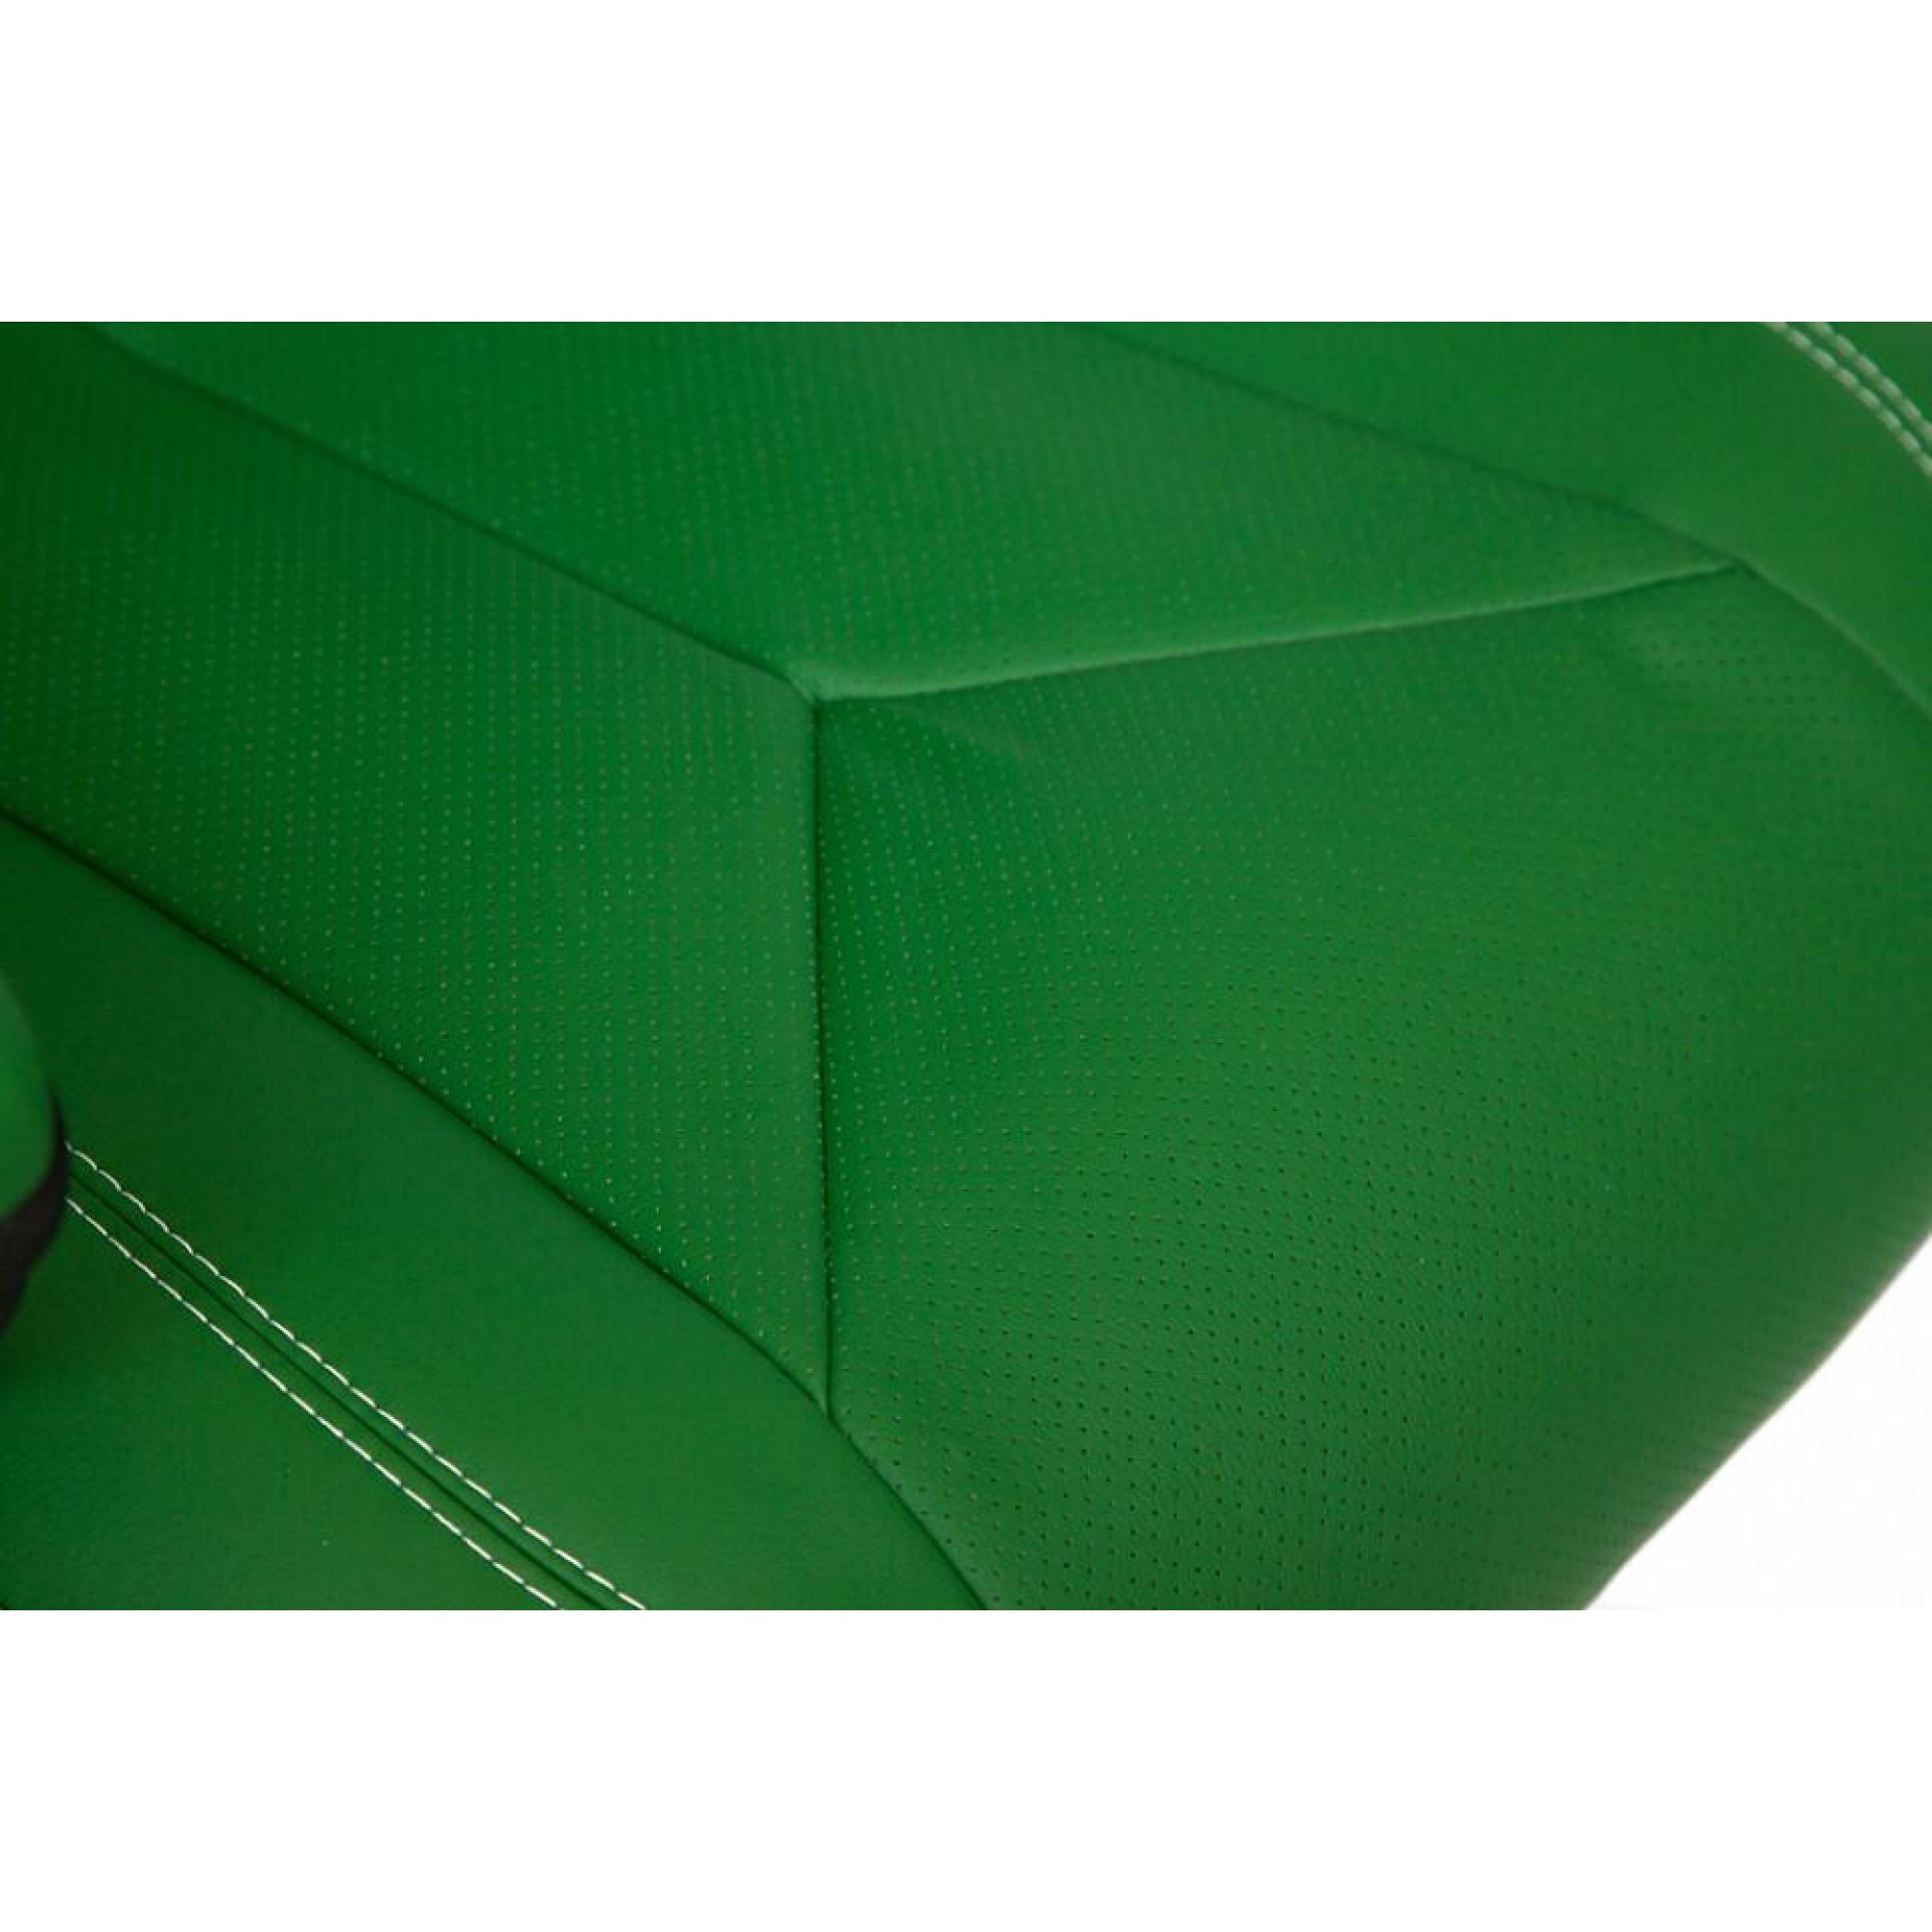 Кресло для руководителя Boss зеленый 660x540x1320-1450(TET_11679)